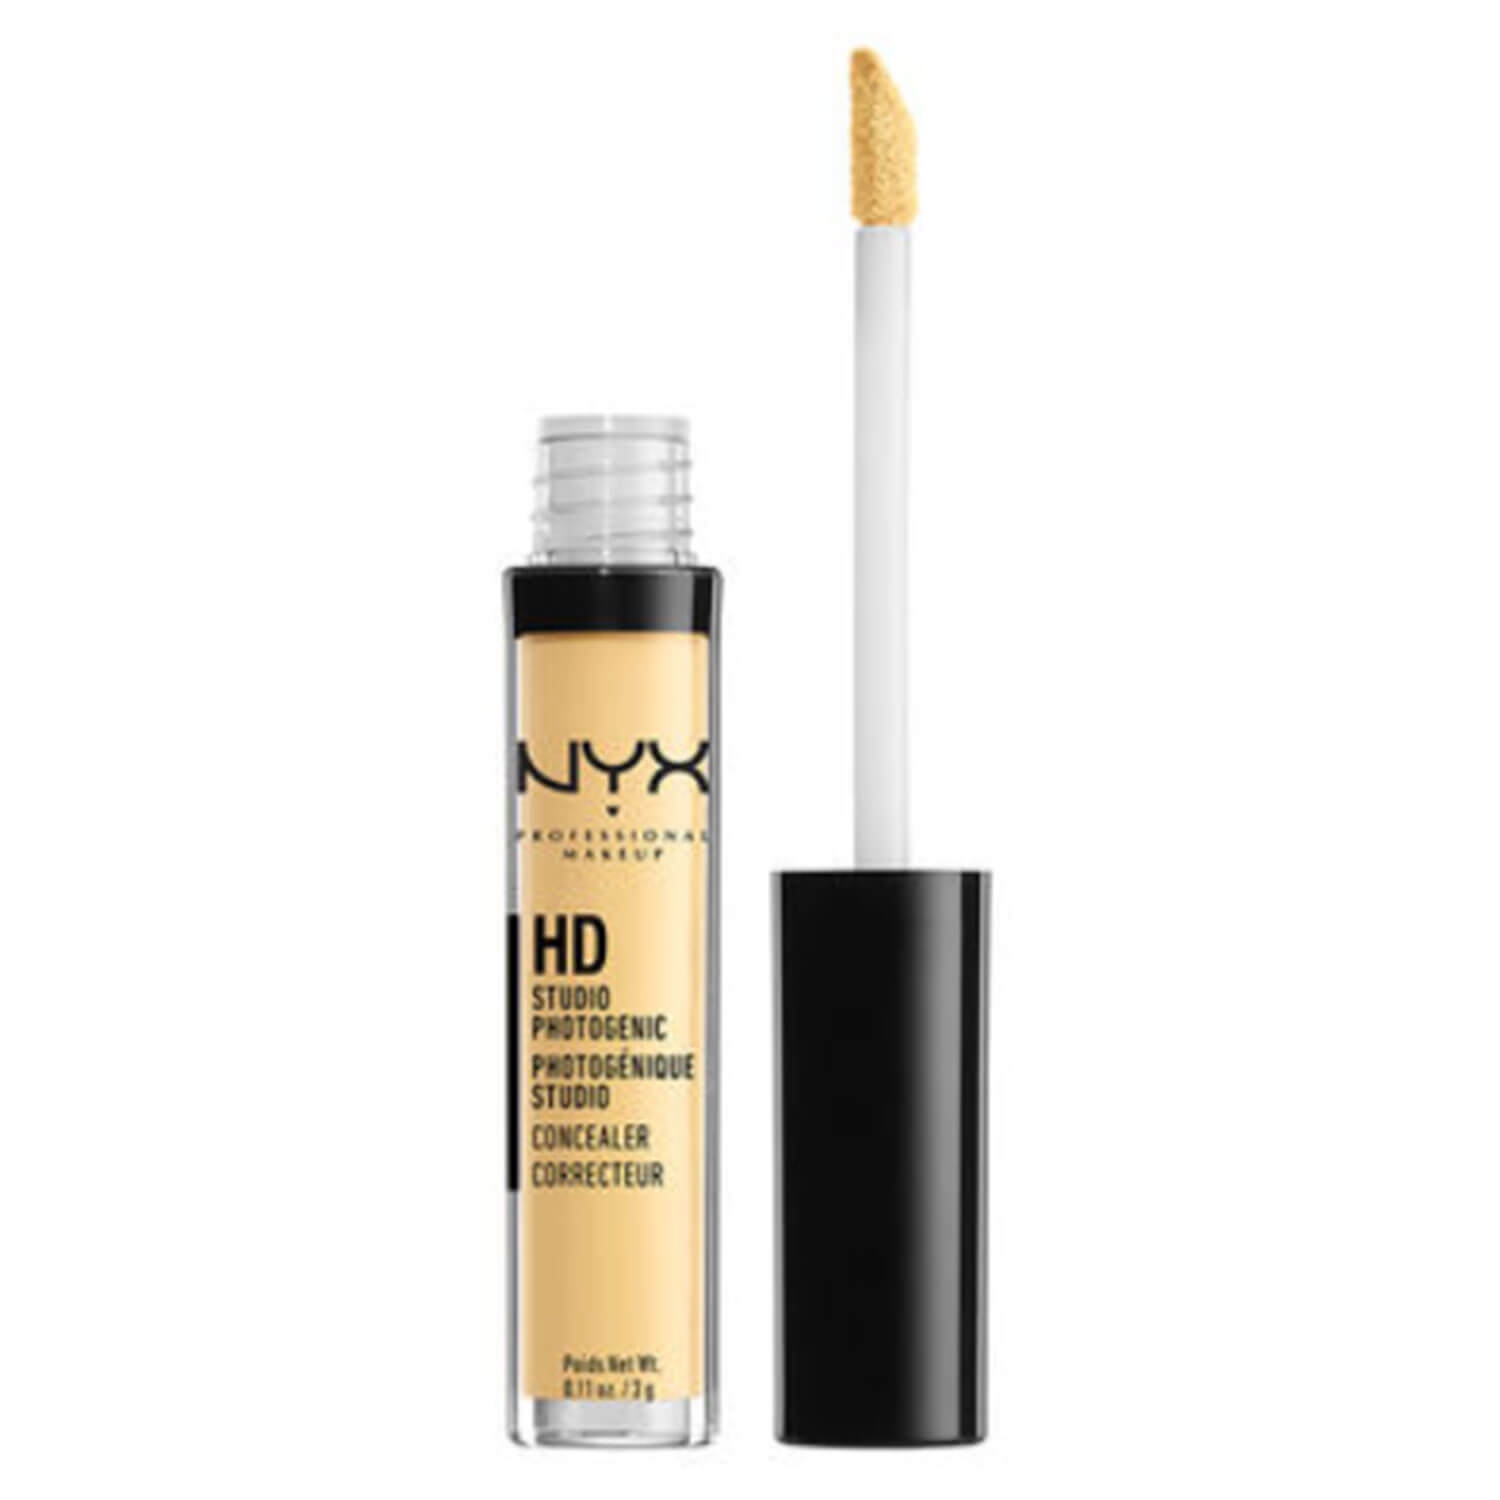 Produktbild von NYX Concealer - HD Photogenic Wand Yellow